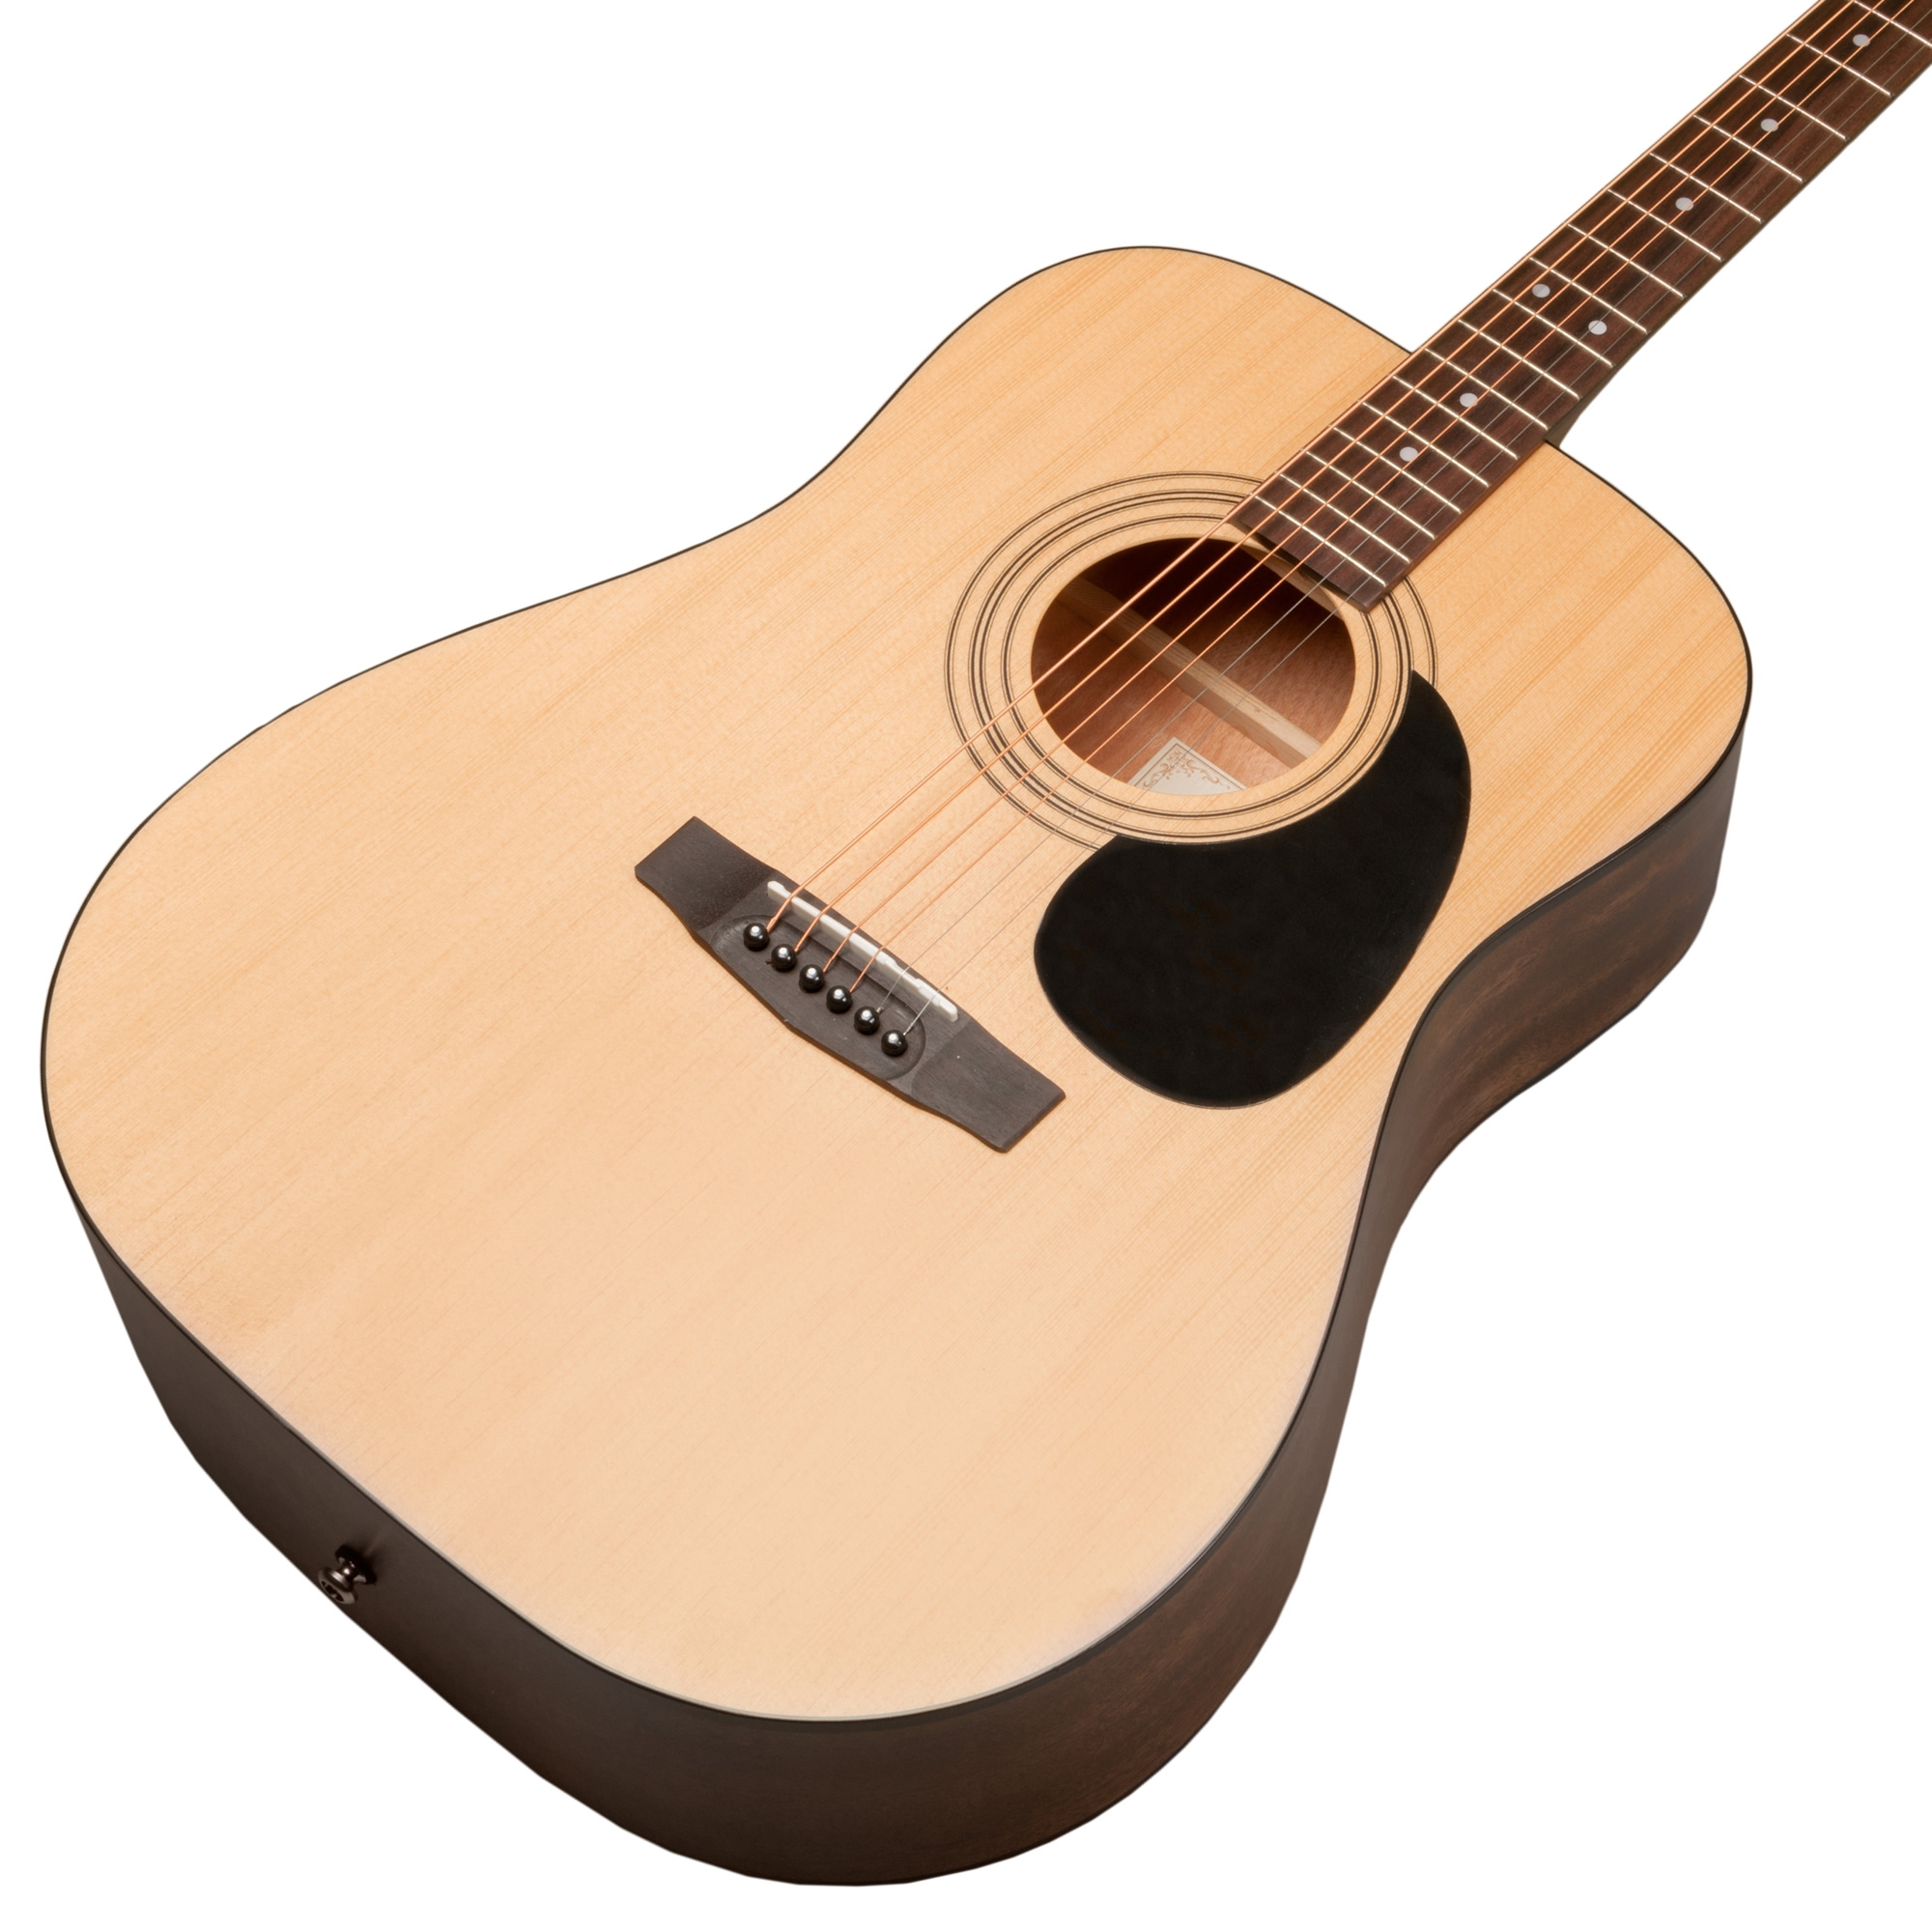 Limited Series アコースティックギター Y2